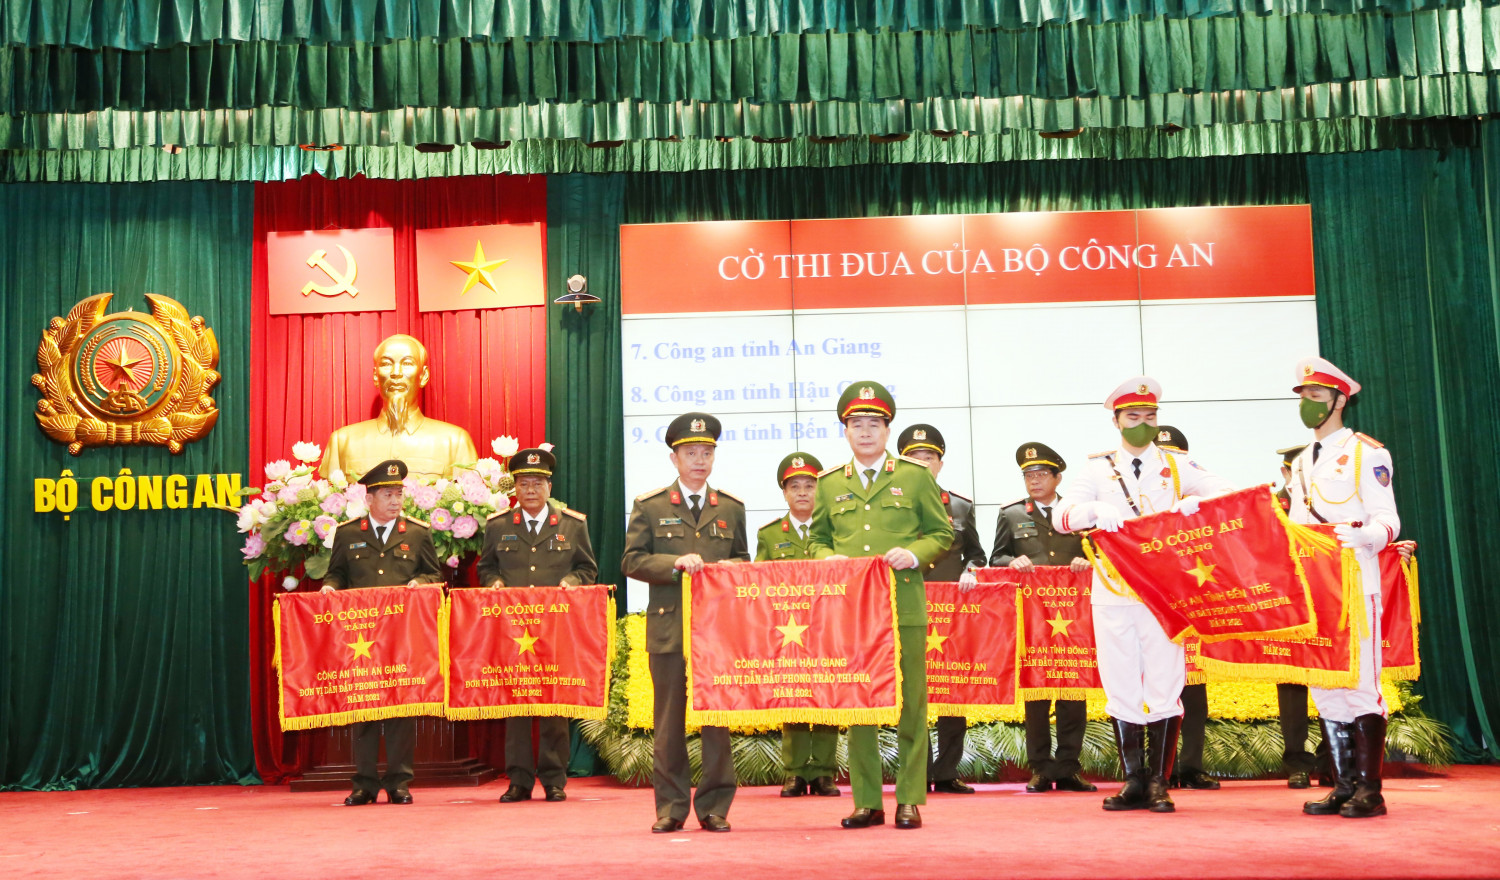 Đồng chí Thiếu tướng Lê Quốc Hùng, Ủy viên Trung ương Đảng, Thứ trưởng Bộ Công an trao Cờ thi đua của Bộ Công an cho Công an tỉnh Hậu Giang